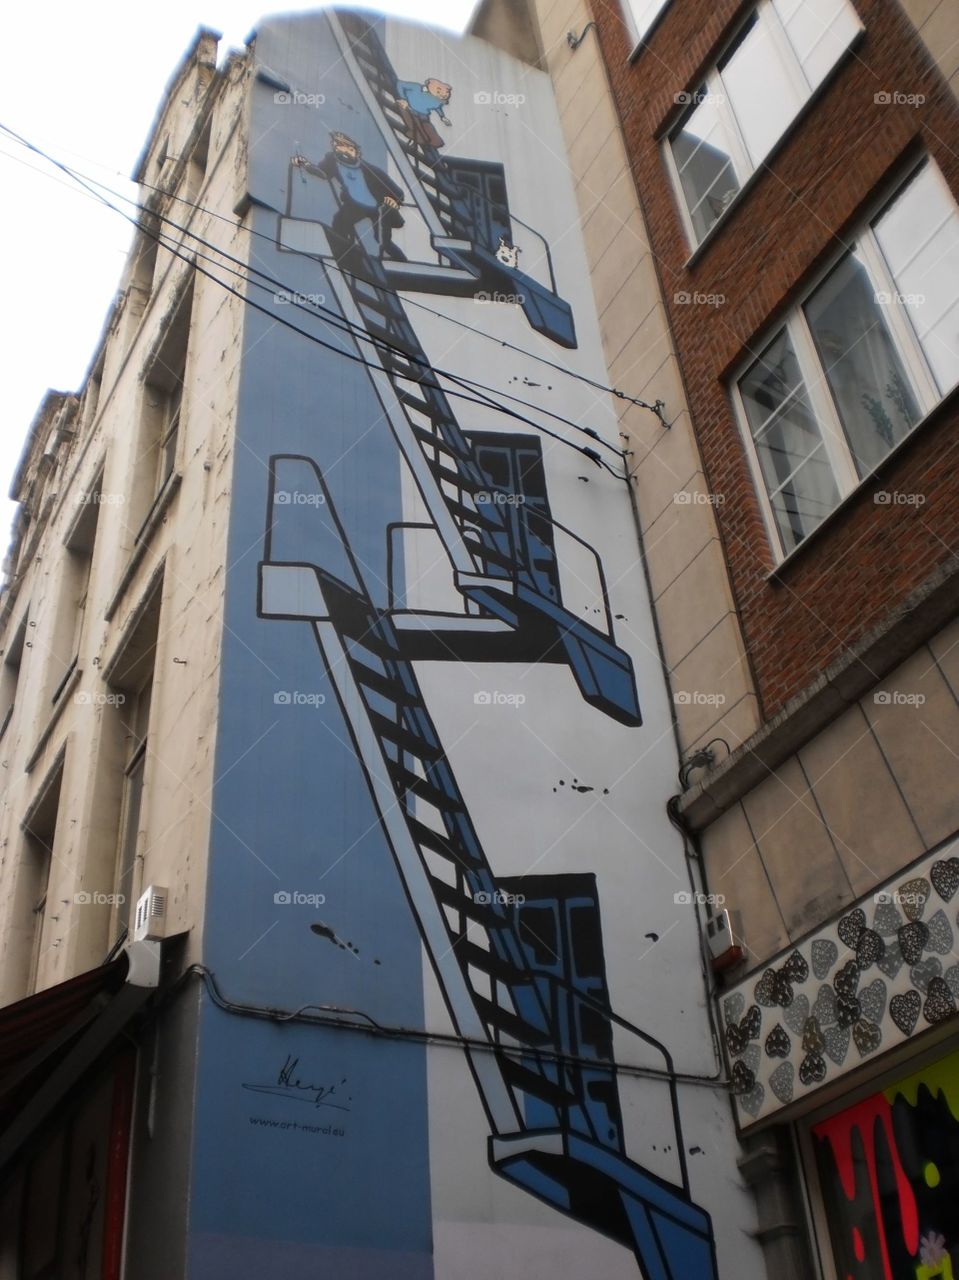 Street art in Brussels 